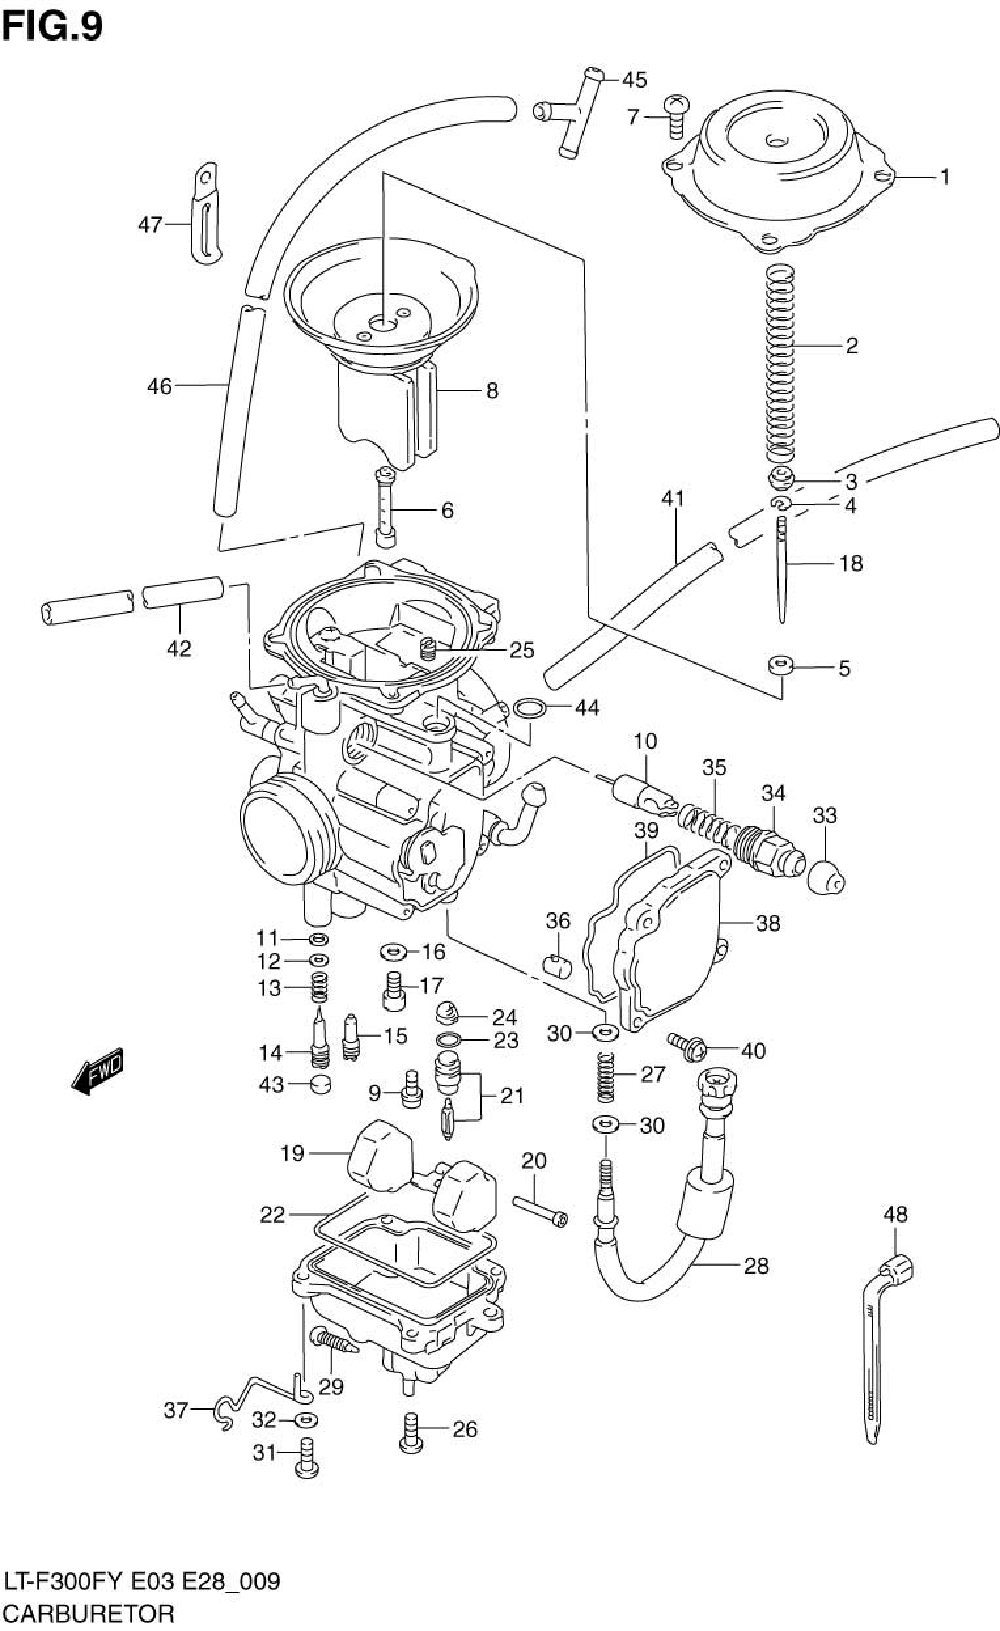 Carburetor (model x)